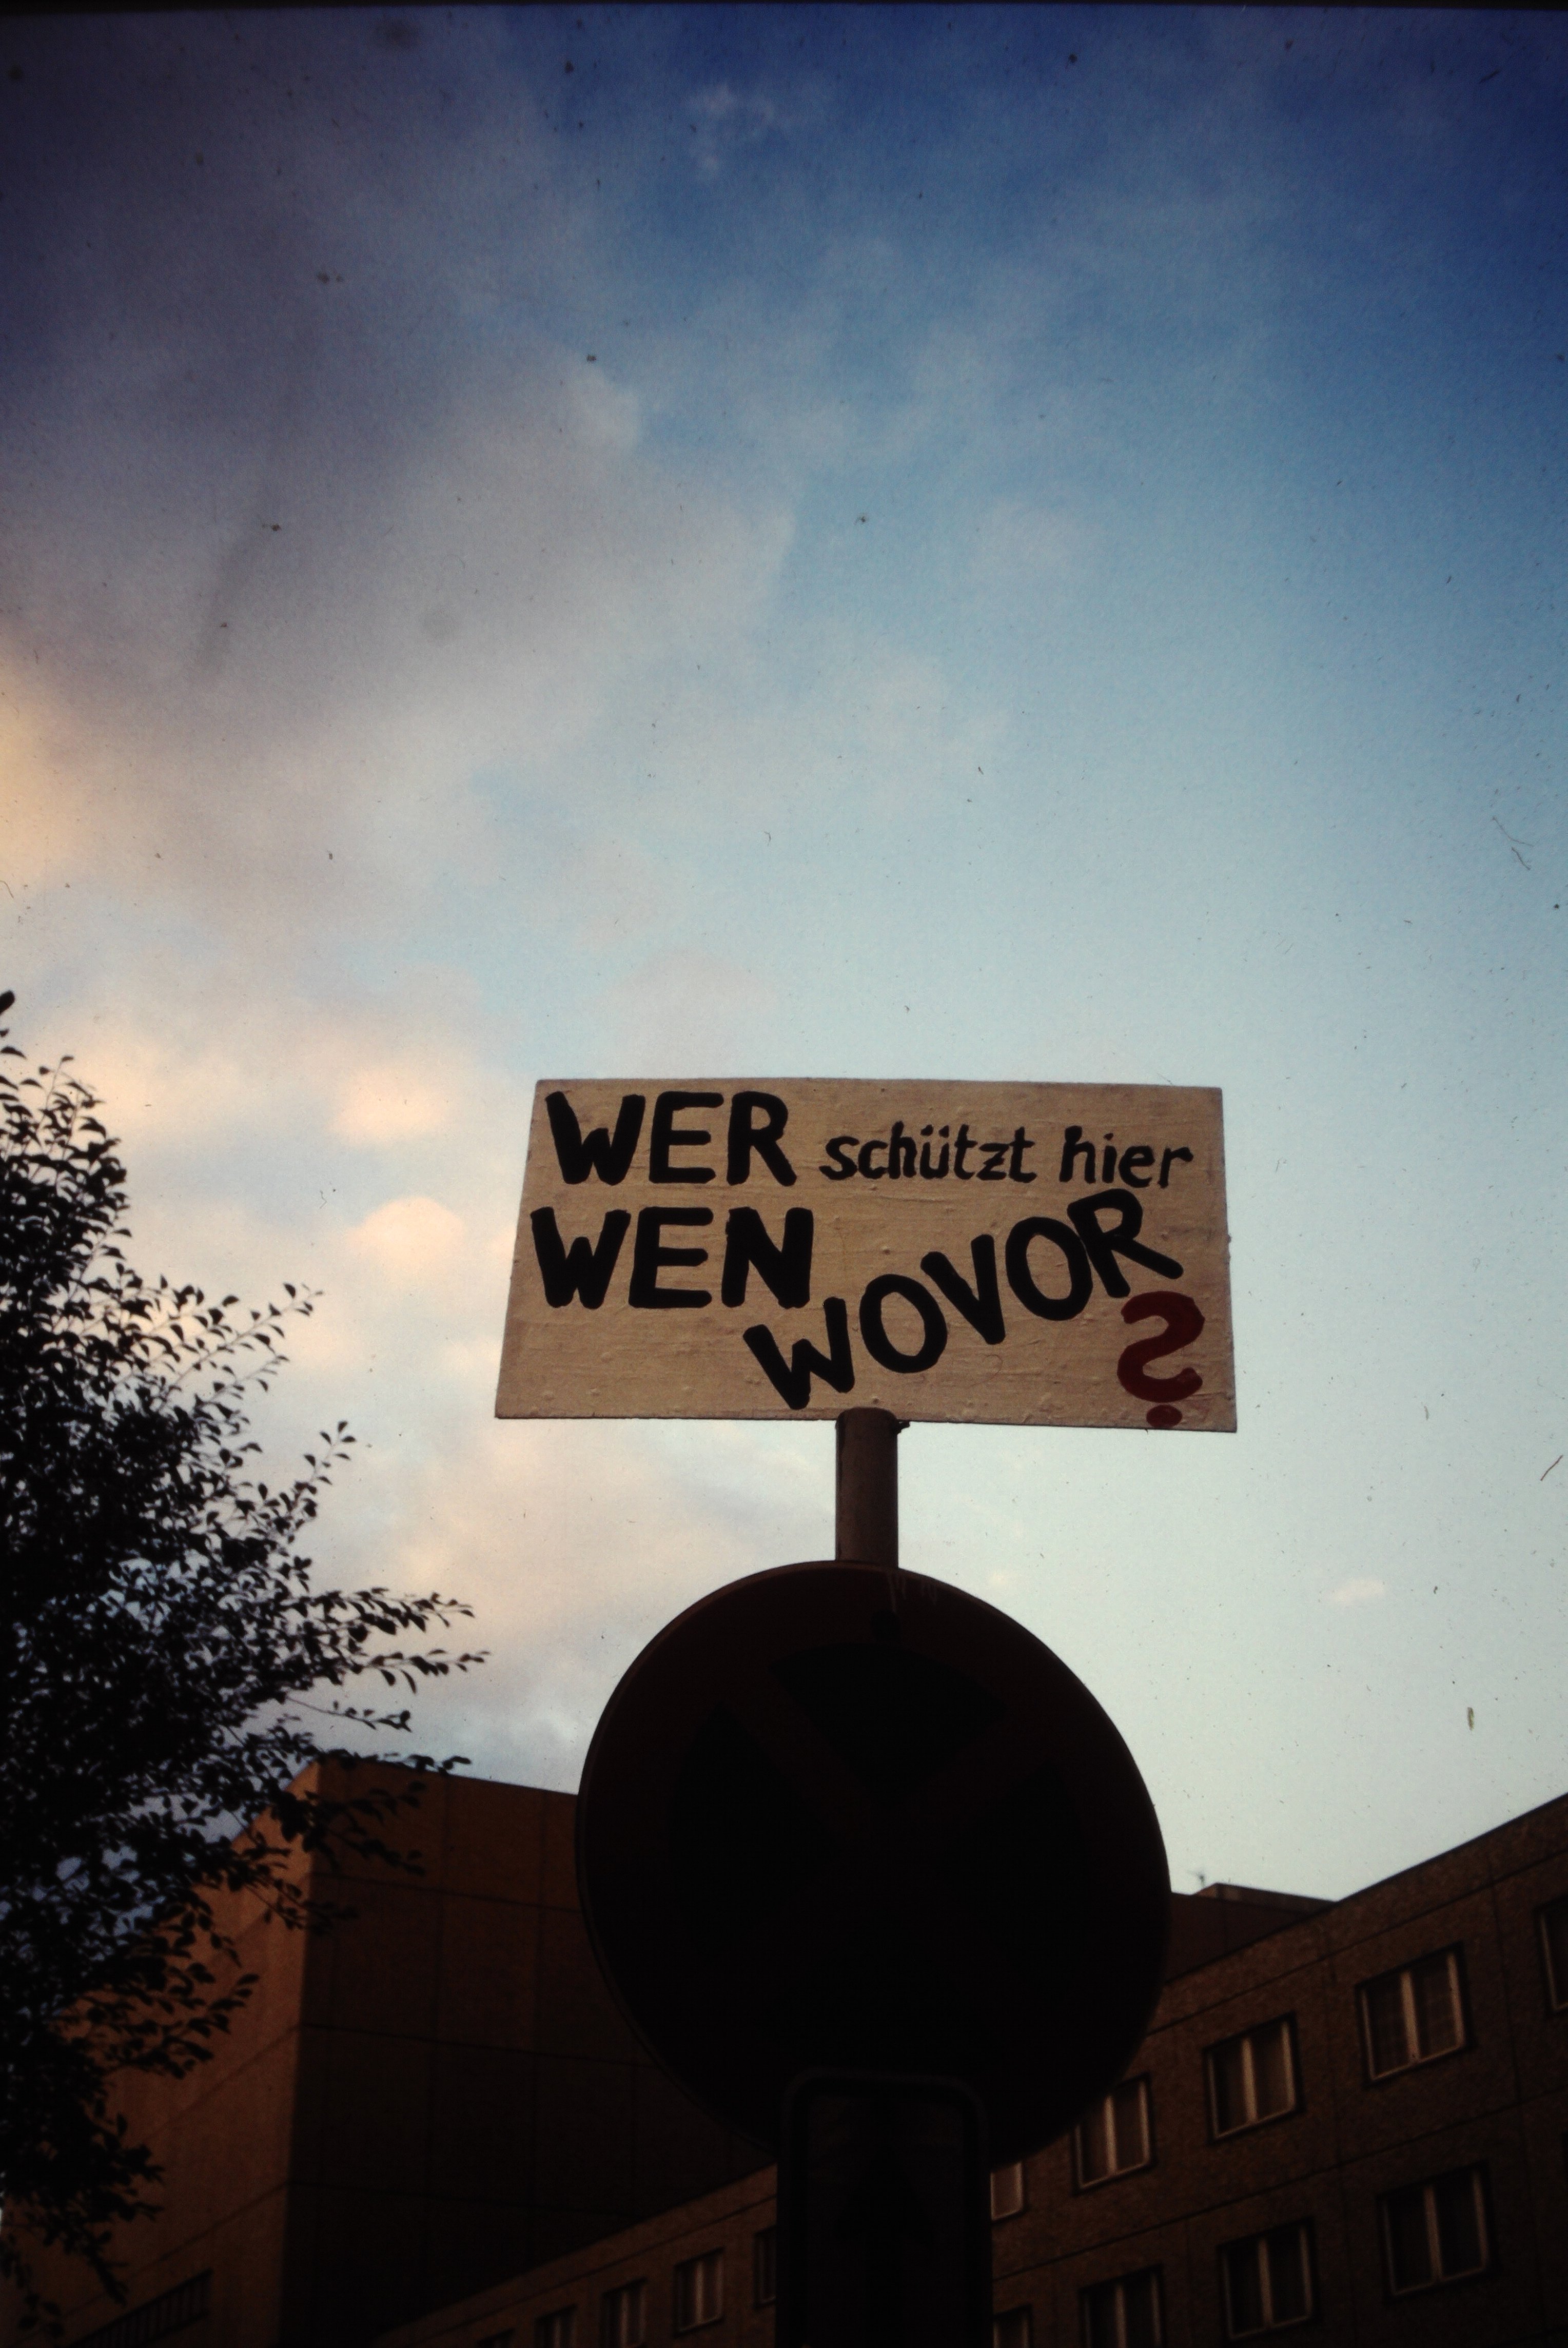 Zentrale der Staatsicherheit in Berlin: Plakat mit der Aufschrift "Wer schützt hier wen wovor?" (DDR Geschichtsmuseum im Dokumentationszentrum Perleberg CC BY-SA)